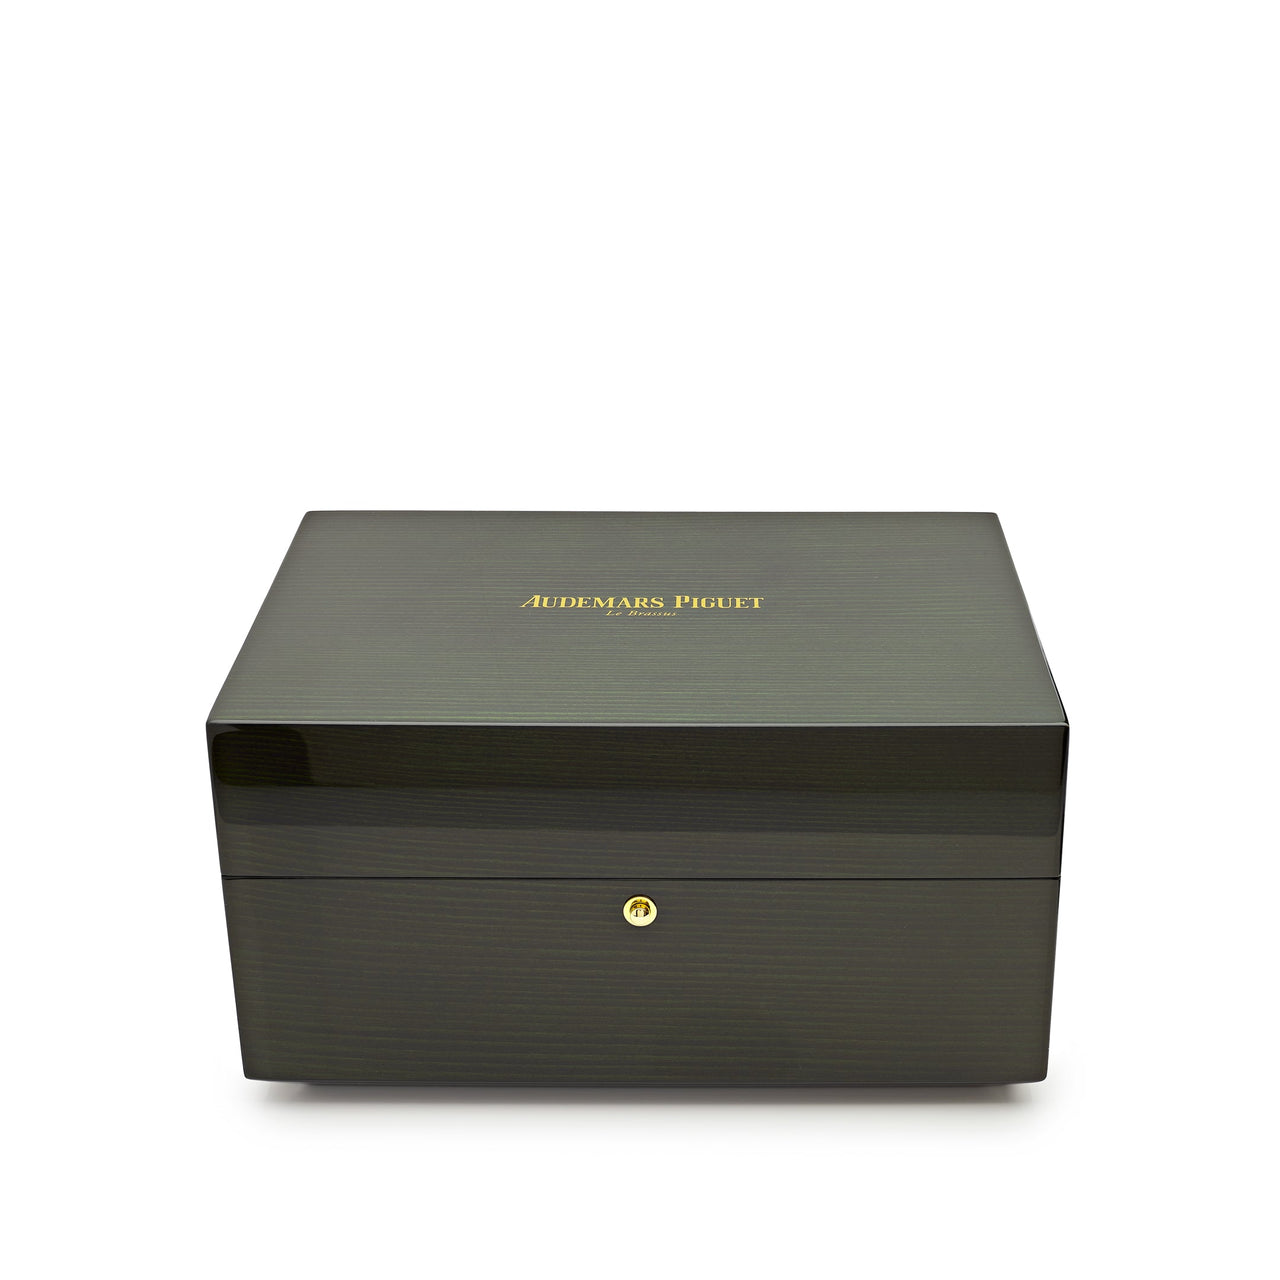 Luxury Watch Audemars Piguet Royal Oak Offshore Tourbillon Chronograph Limited to 50pcs 26421ST.OO.A002CA.01 Wrist Aficionado